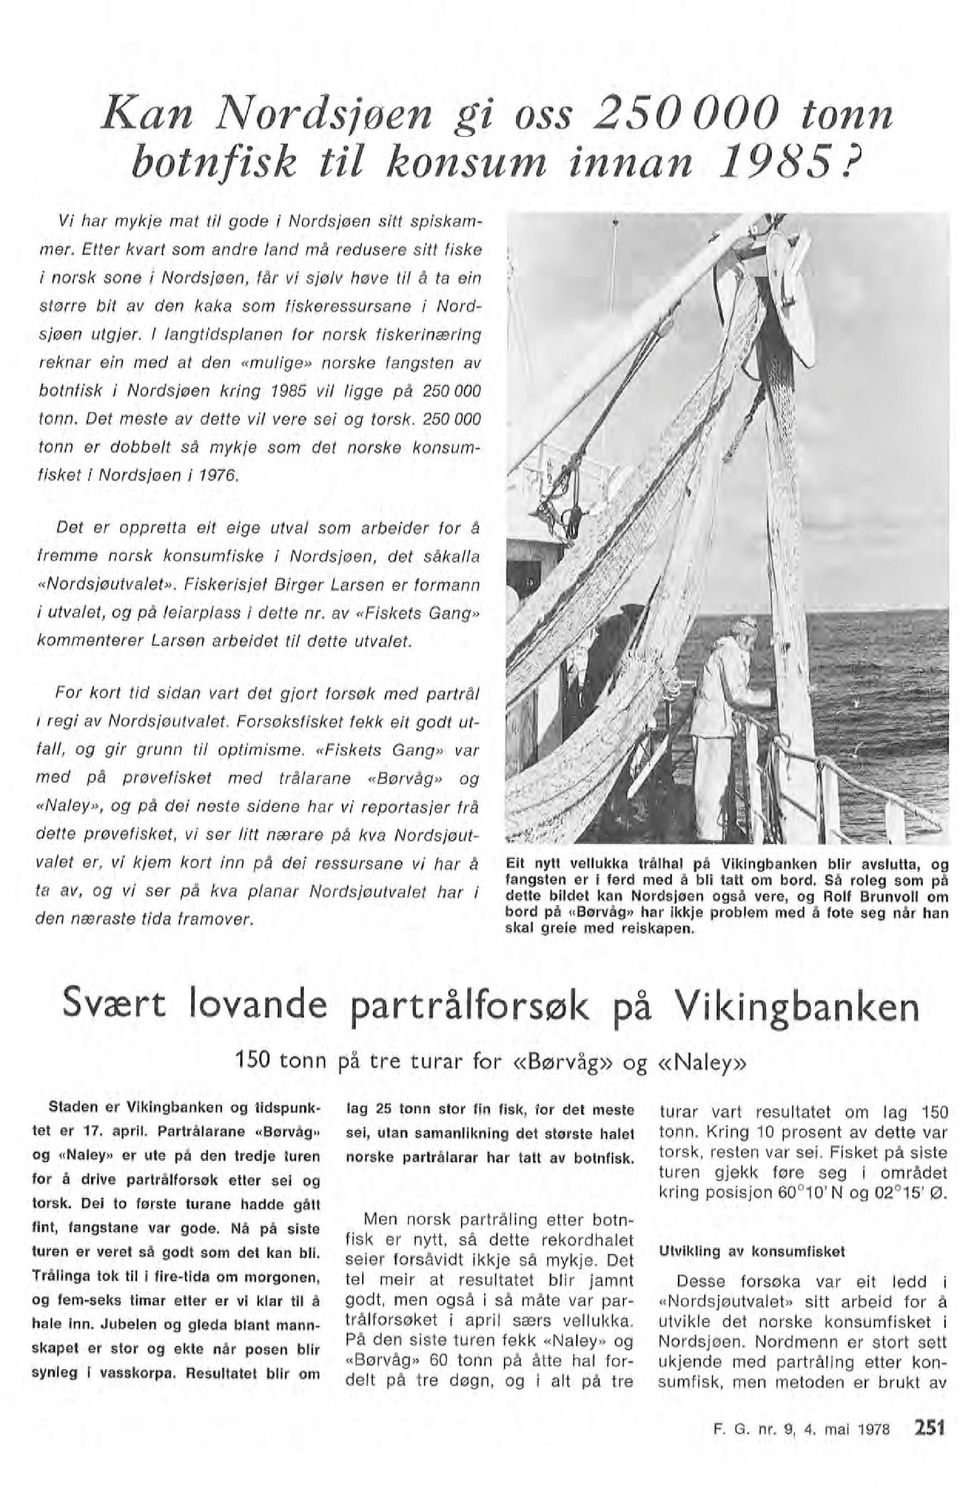 angtidspanen for norsk fiskerinæring reknar ein med at den «muige» norske fangsten av botnfisk i Nordsjøen kring 1985 vi igge på 250 000 tonn. Det meste av dette vi vere sei og torsk.